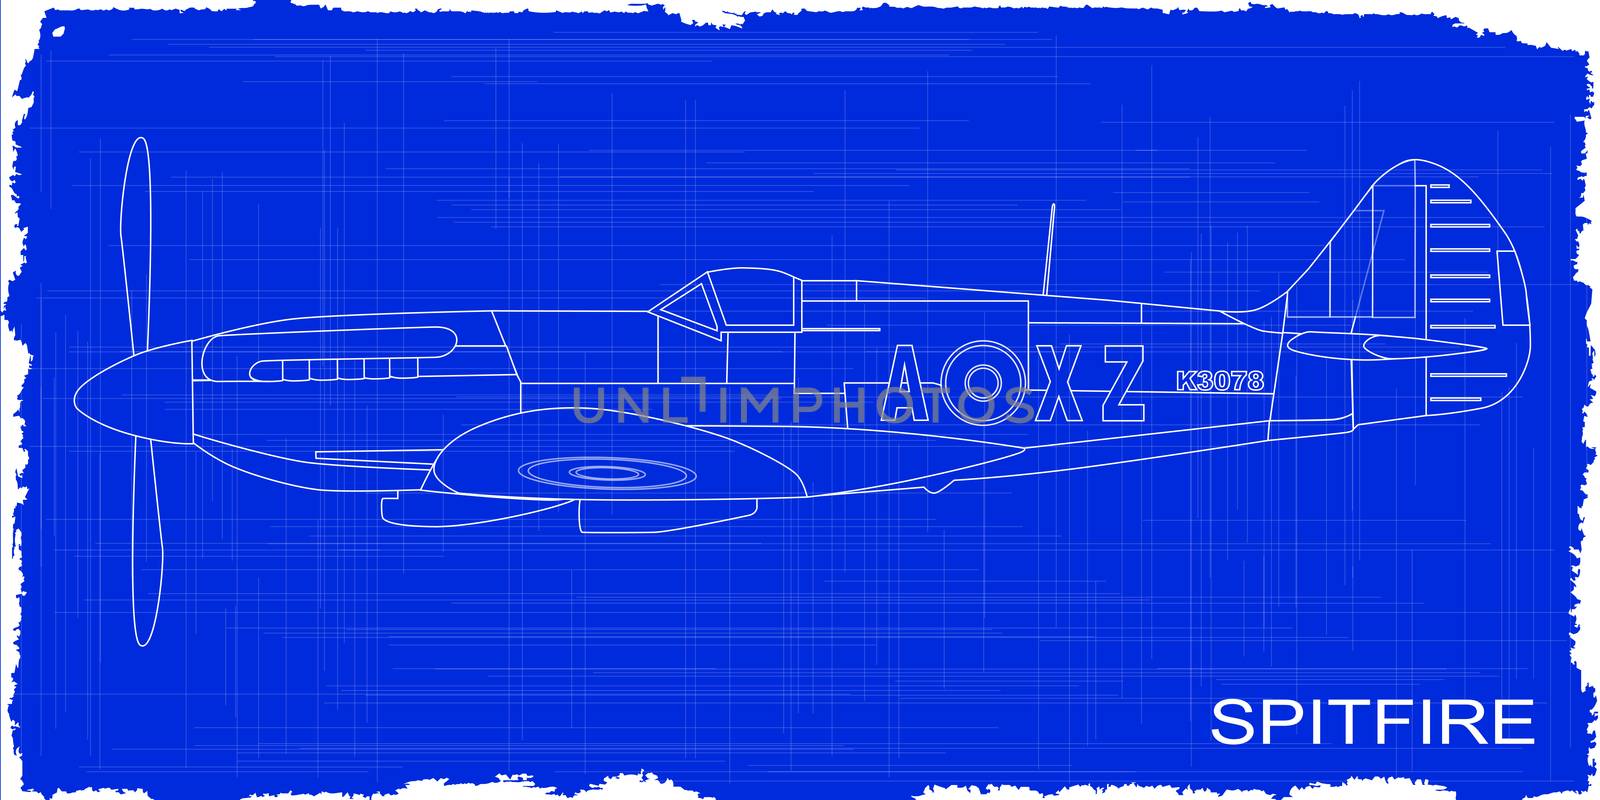 A Supermarine World War II Spitfire Mark XIV fighter plane as a blueprint